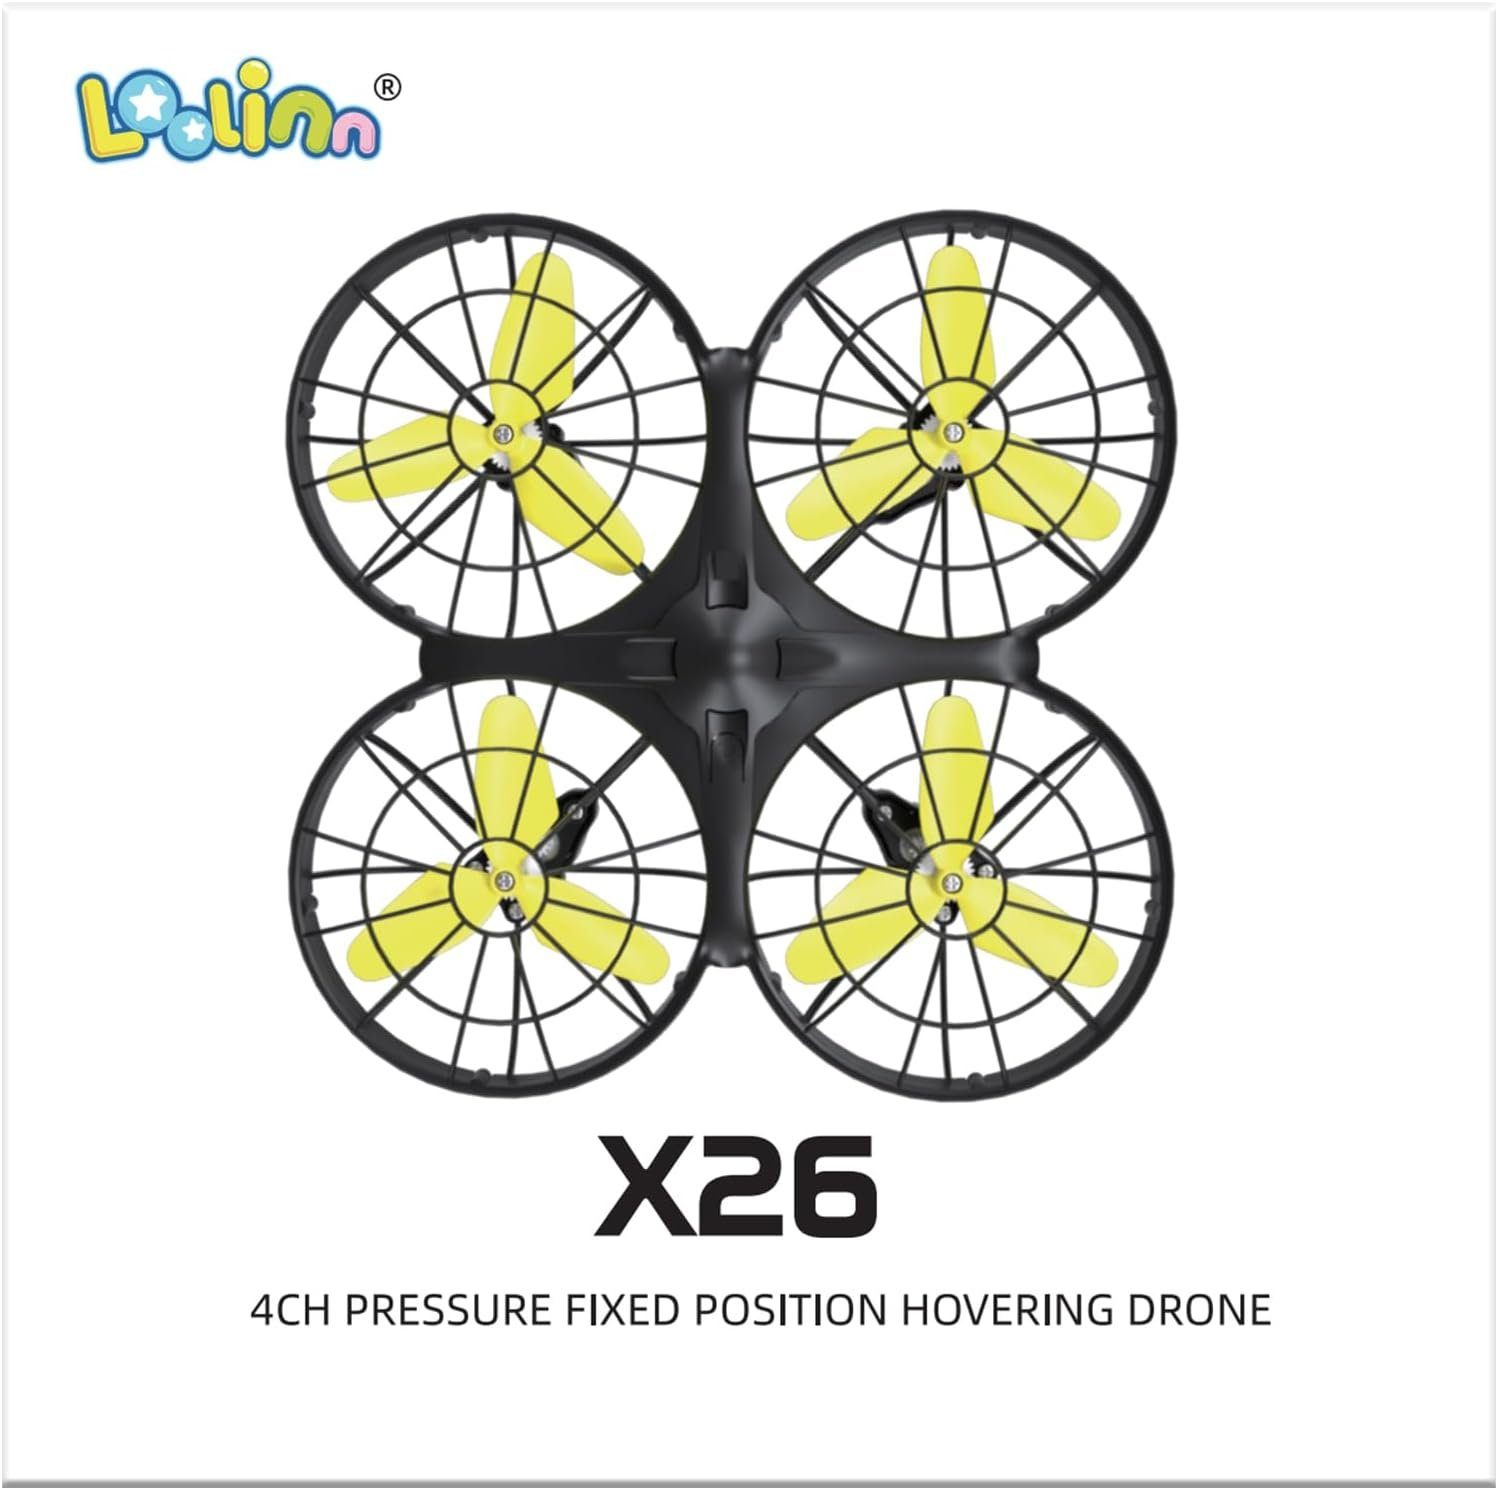 Loolinn Drohne (Kinder Mini 20 Flips, Quadrocopter, Min. 360° Drohne RC - Flugzeit)